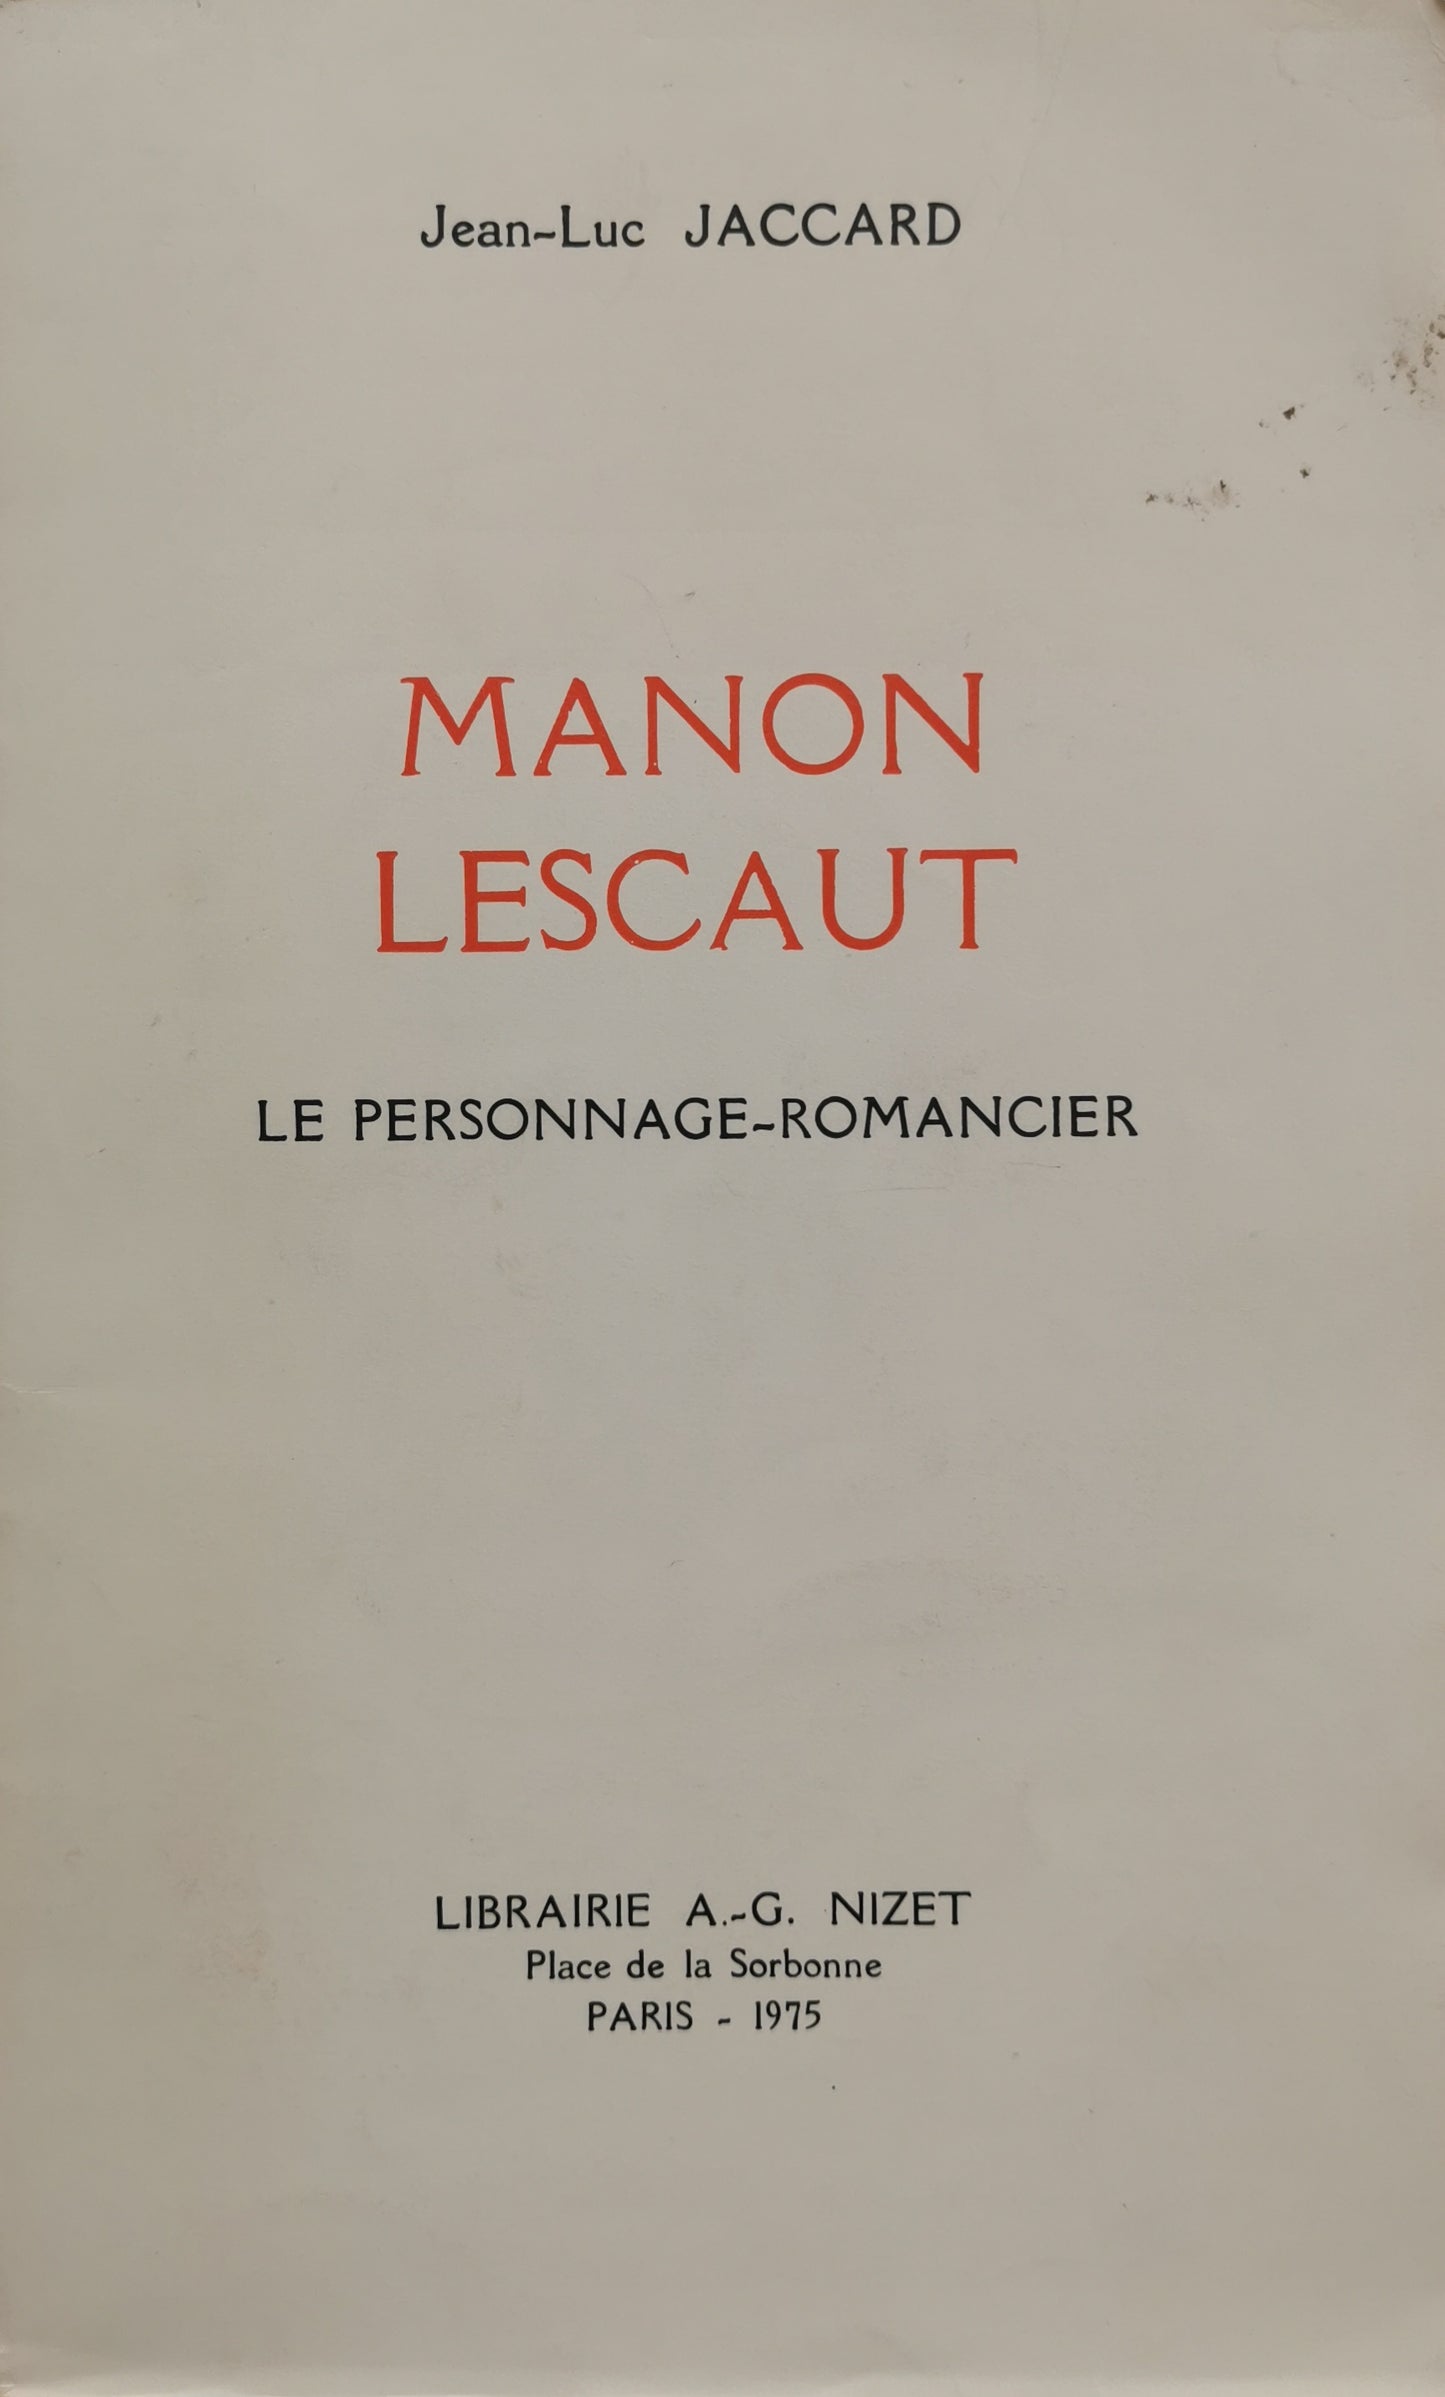 Manon Lescaut, Le personnage-romancier, Jean-Luc Jaccard, Librairie A.-G. Nizet, 1975.